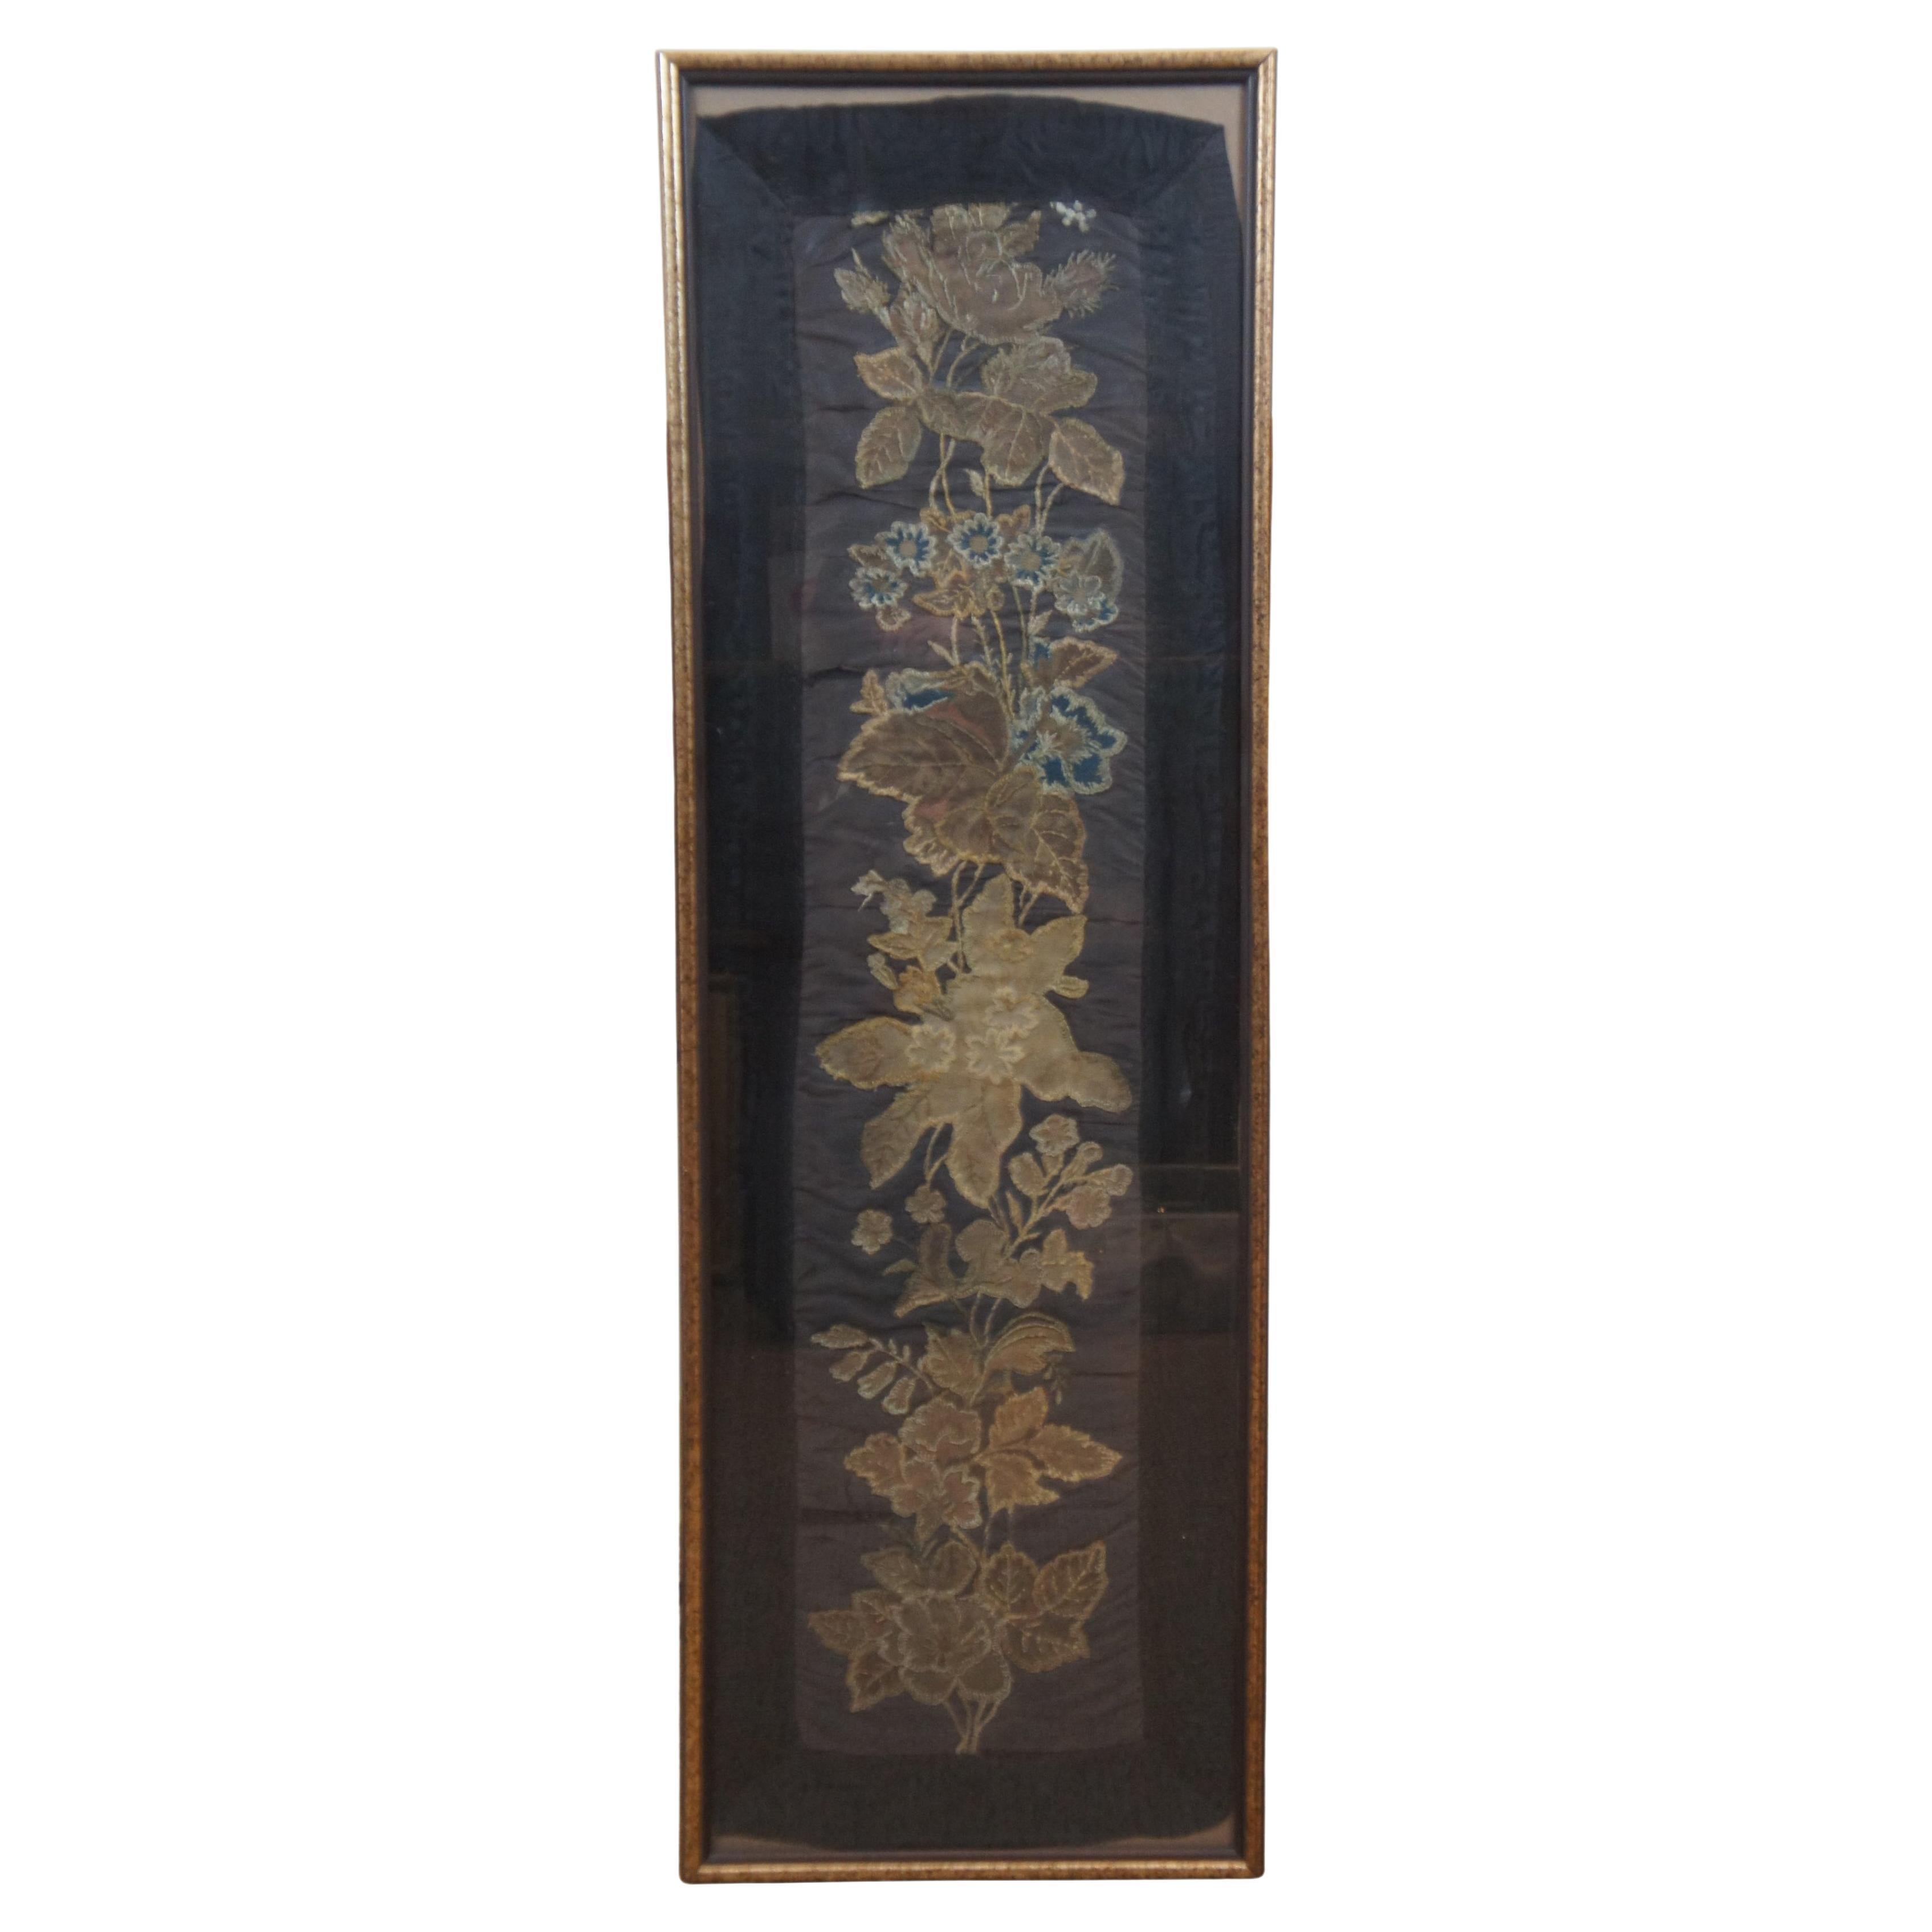 Tapis de table chinois ancien à panneaux floraux brodés en soie style chinoiseries